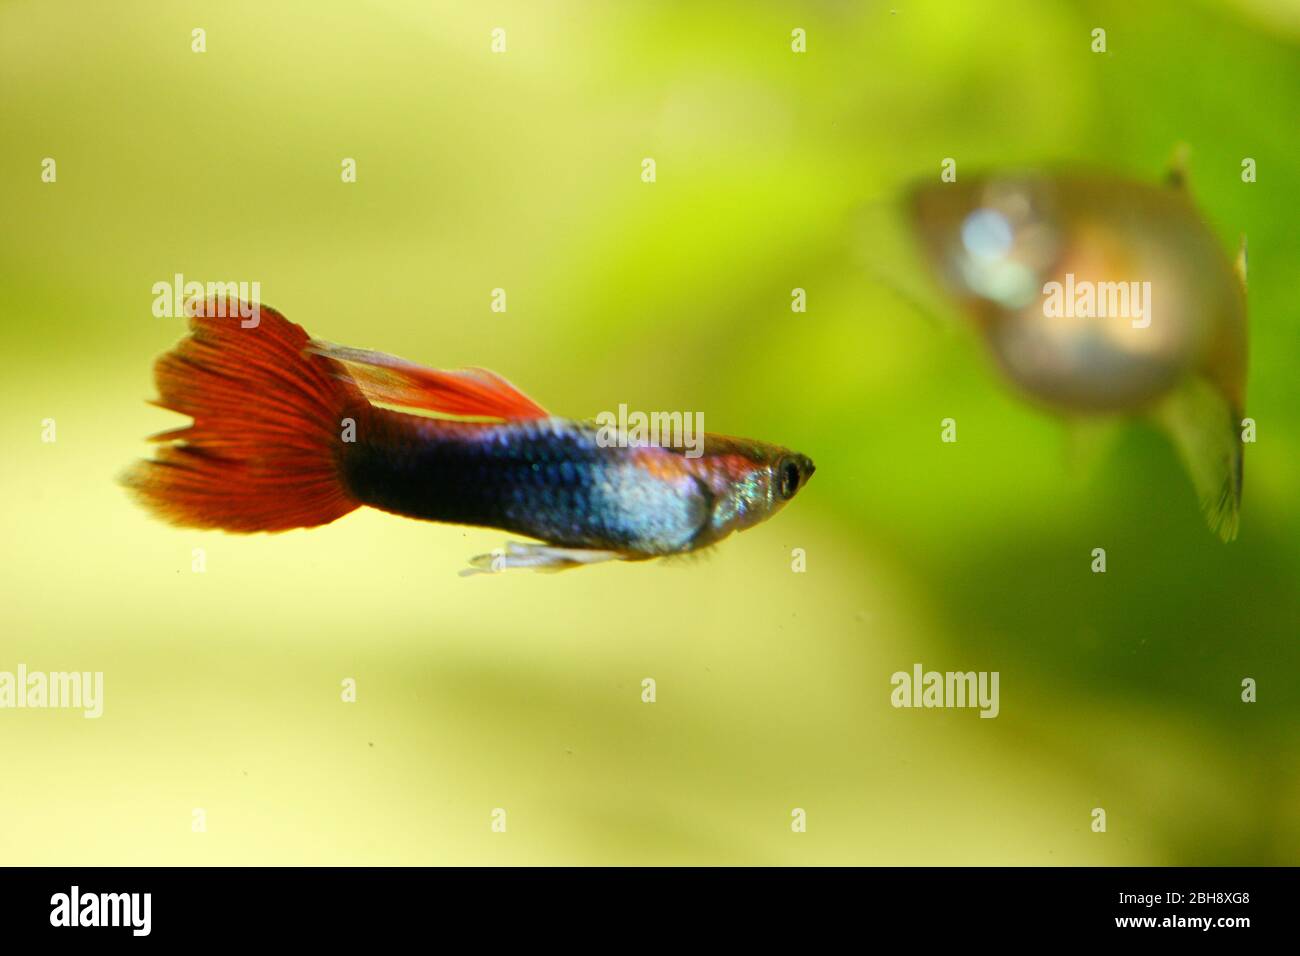 Un maschio guppy (Poecilia reticulata), un popolare acquario di acqua dolce pesce Ein männlicher Guppy, (Poecilia reticulata) ein beliebter Süßwasser-Aquarienfis Foto Stock